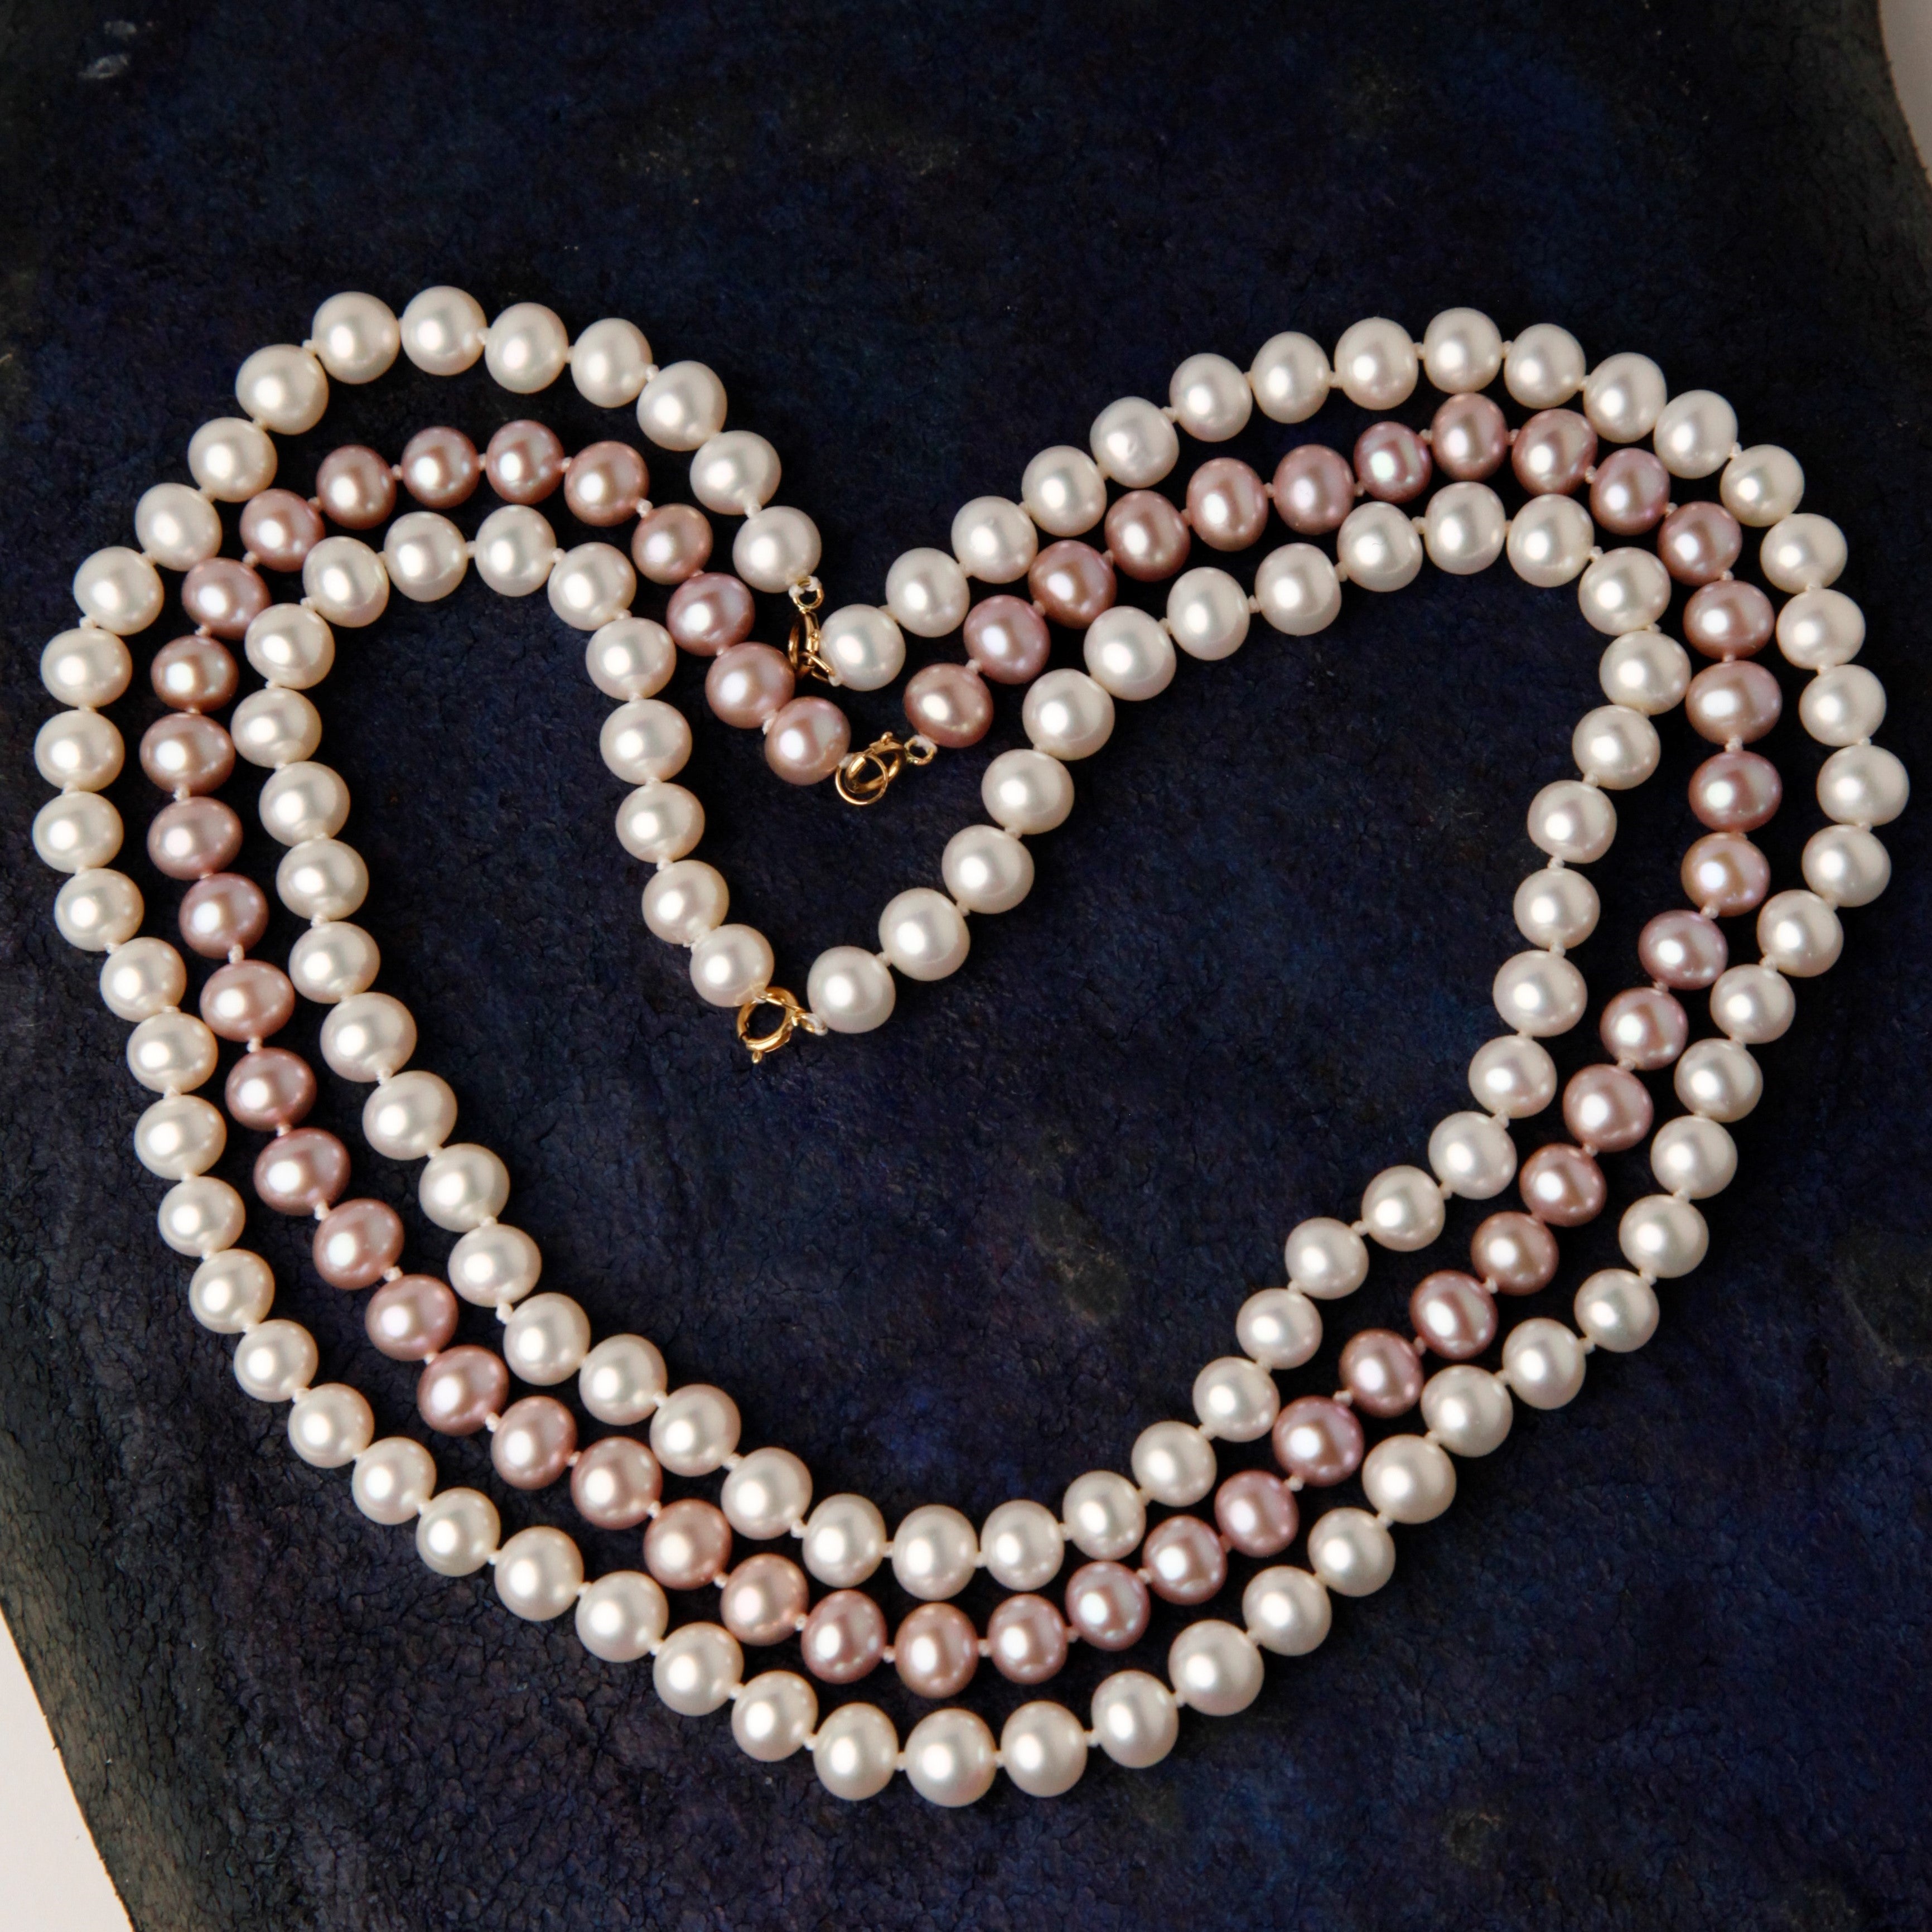 Classic Pearl Necklace & Bracelet Set- Purple